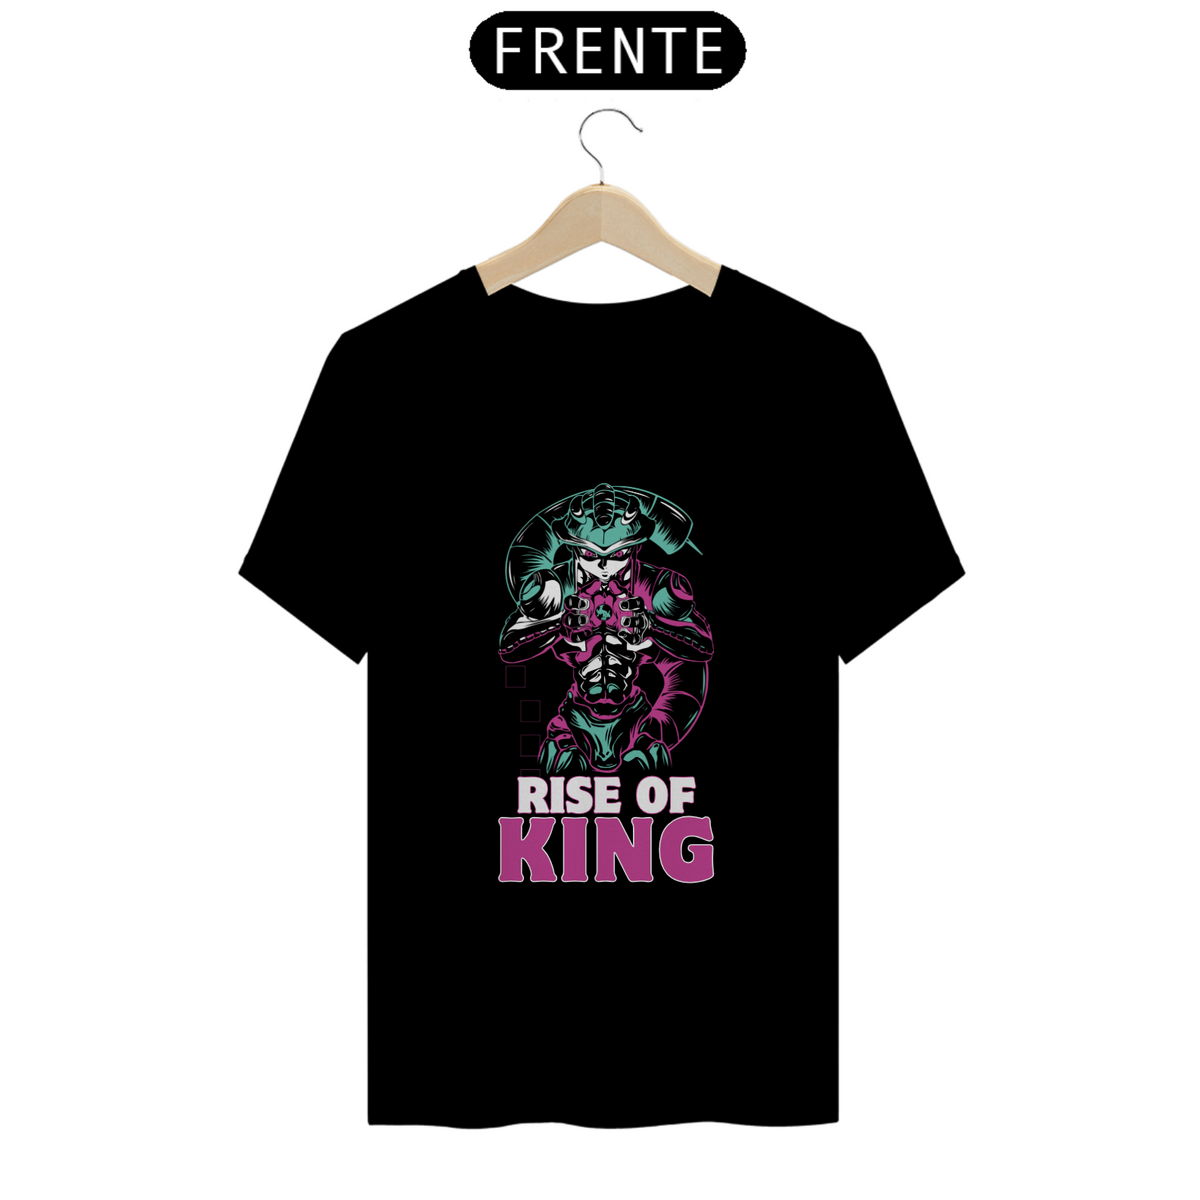 Nome do produto: T-shirt - Rise of King